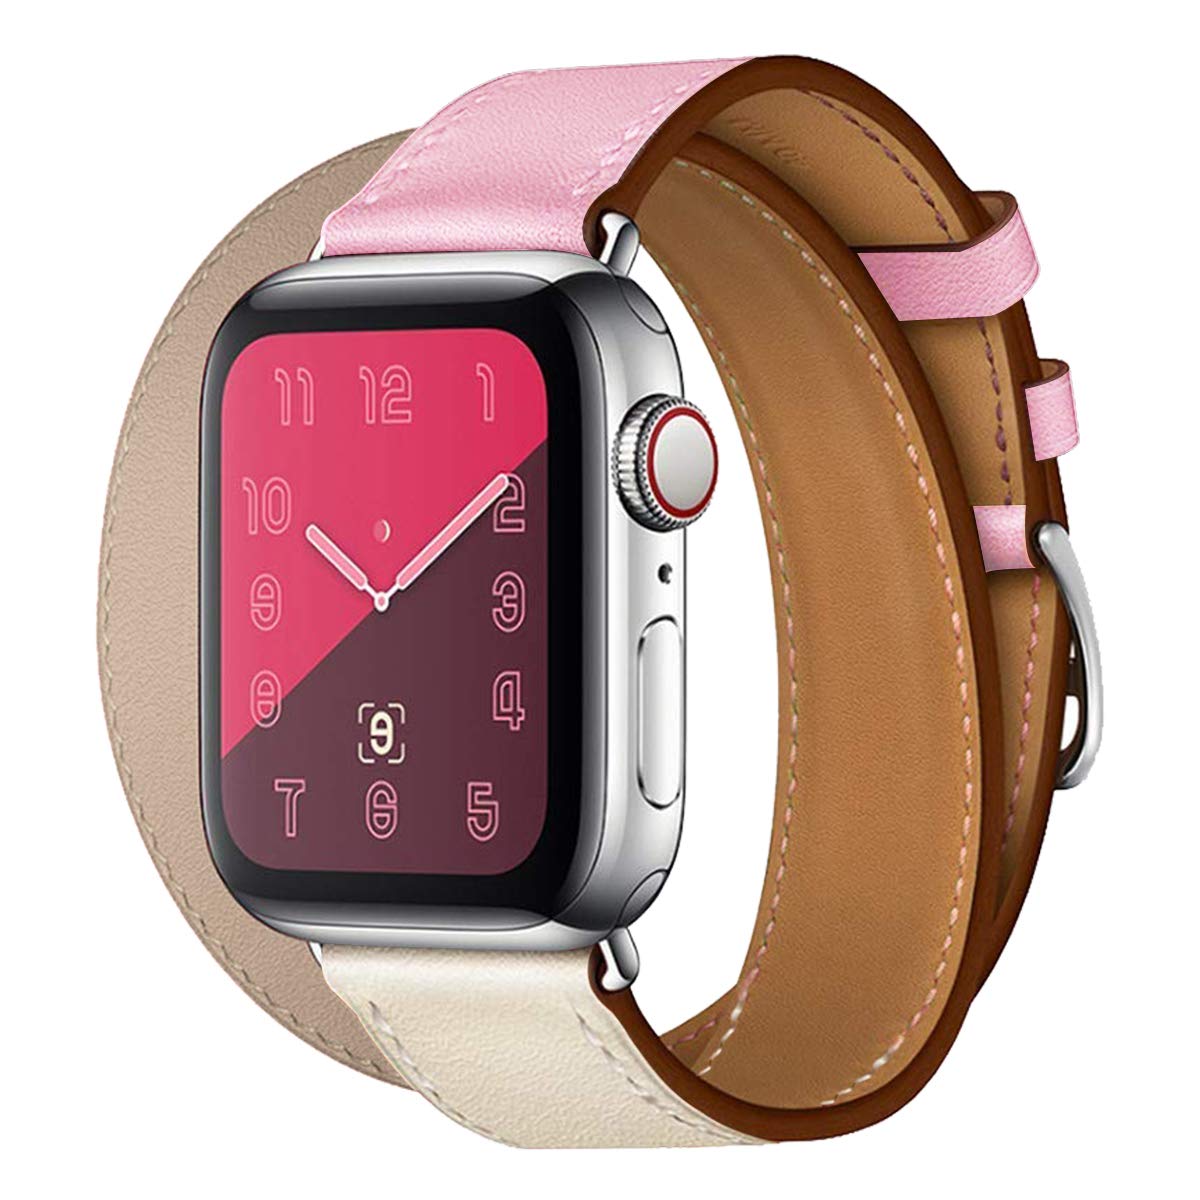 Řemínek iMore Double Tour Apple Watch Series 3/2/1 (38mm) - Béžový/Růžový